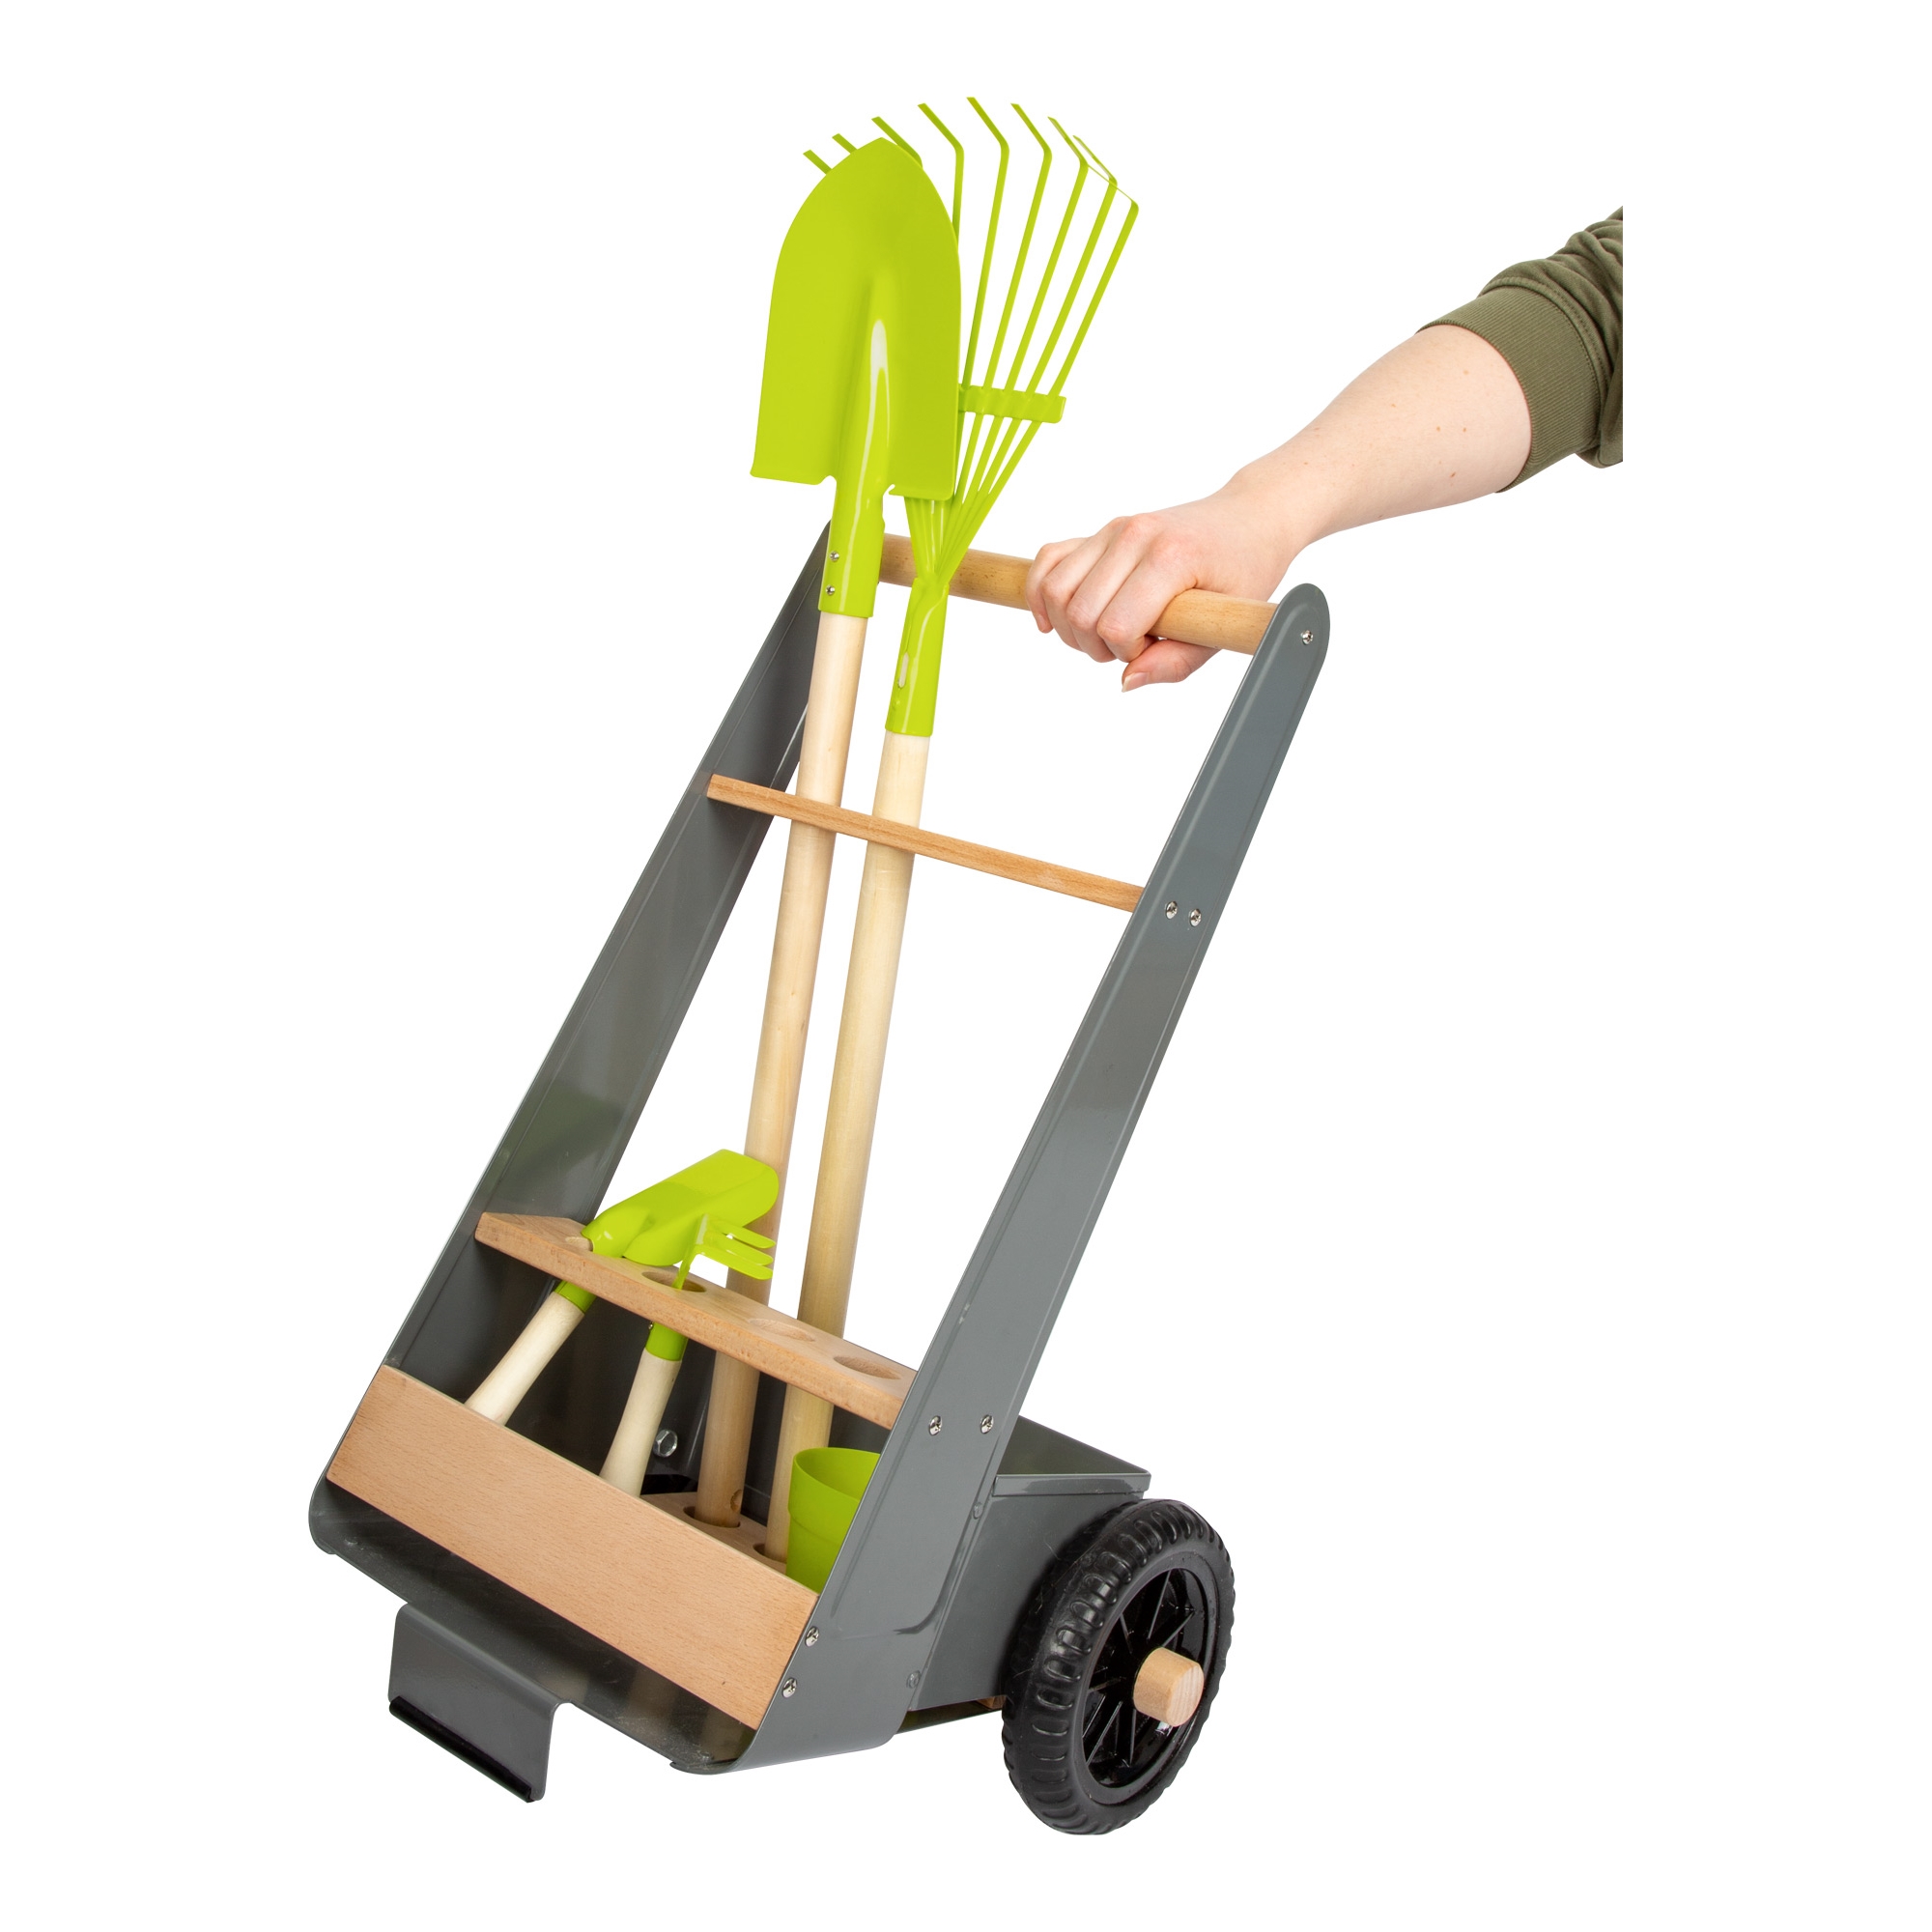 Kinder Gartengeräte Trolley, Gartenwagen - Fahrbarer Ständer für Gartengeräte mit Gartenwerkzeugen